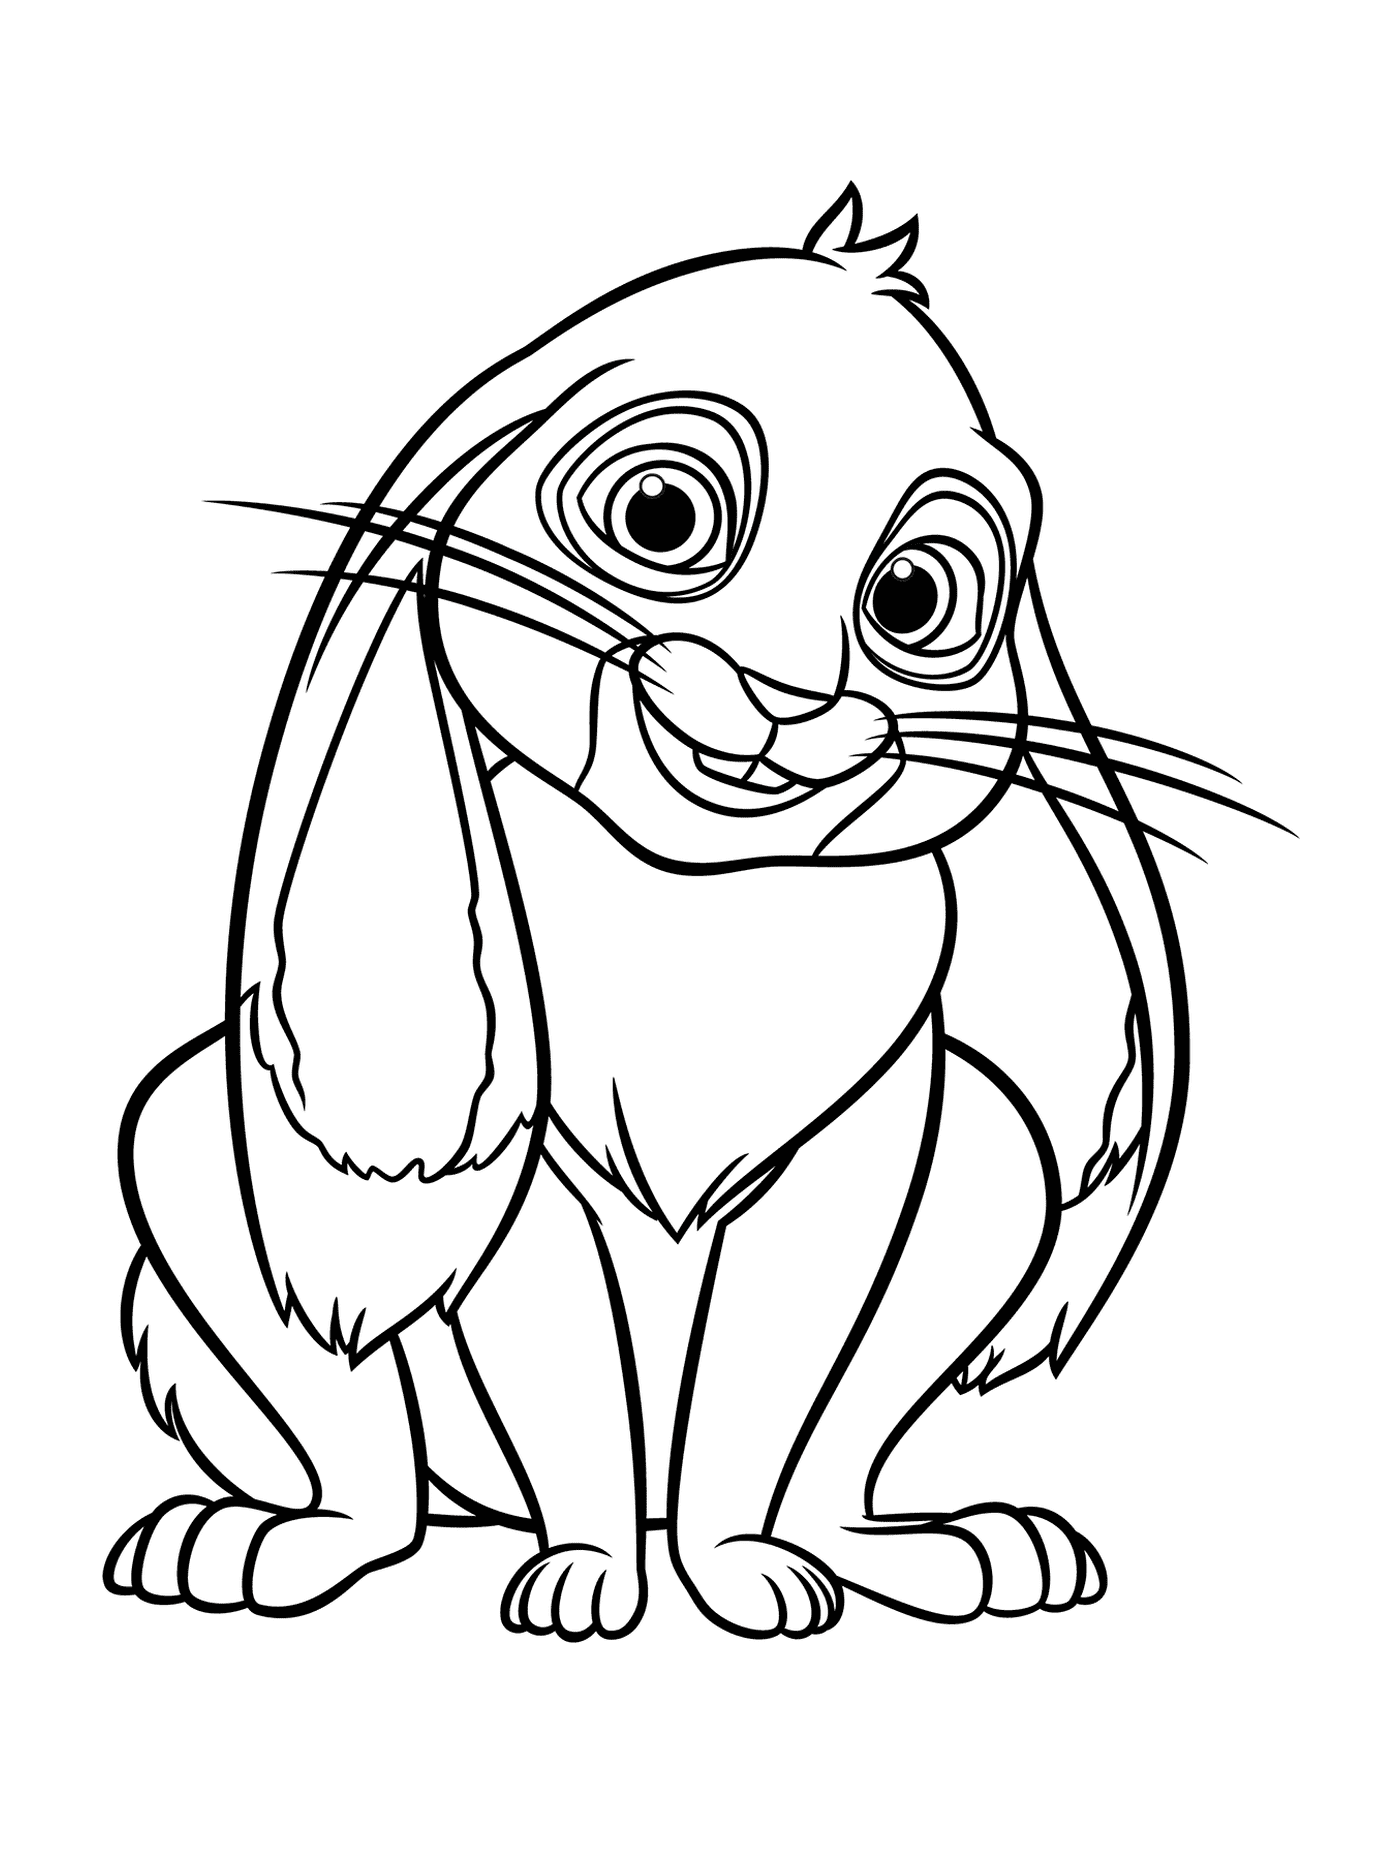  Clover, Princess Sofia's rabbit 